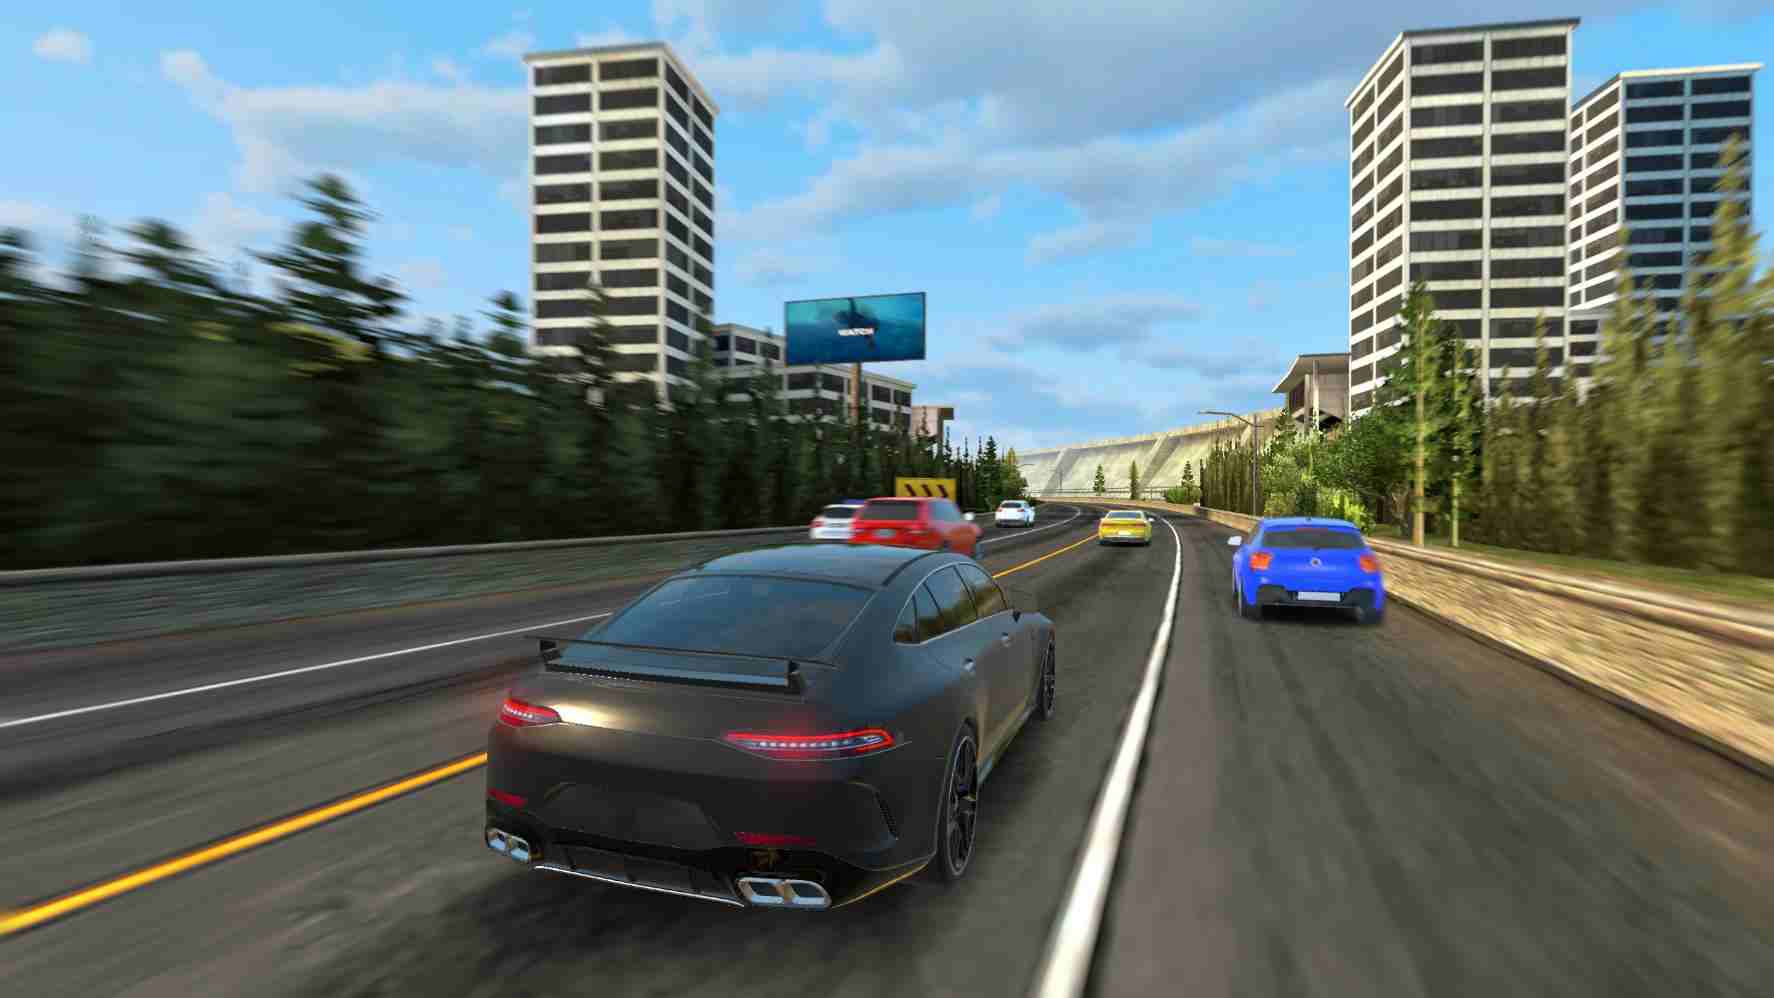 Game Racing in Car 2021 Mod